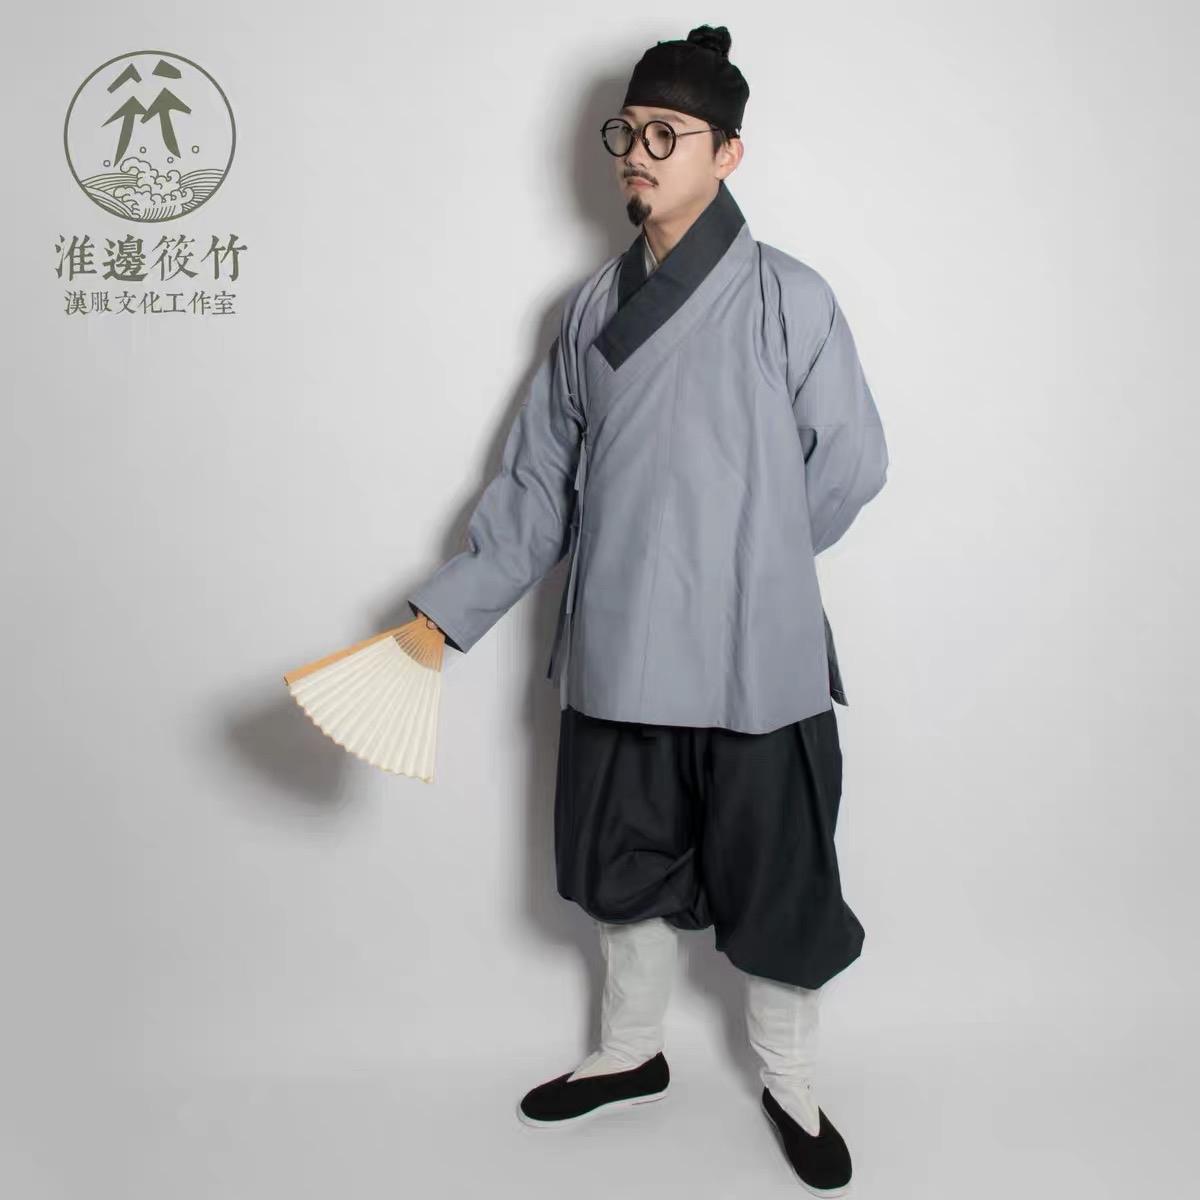 都是中国古人是传统服饰,为什么墨子粗布短褐式的汉服